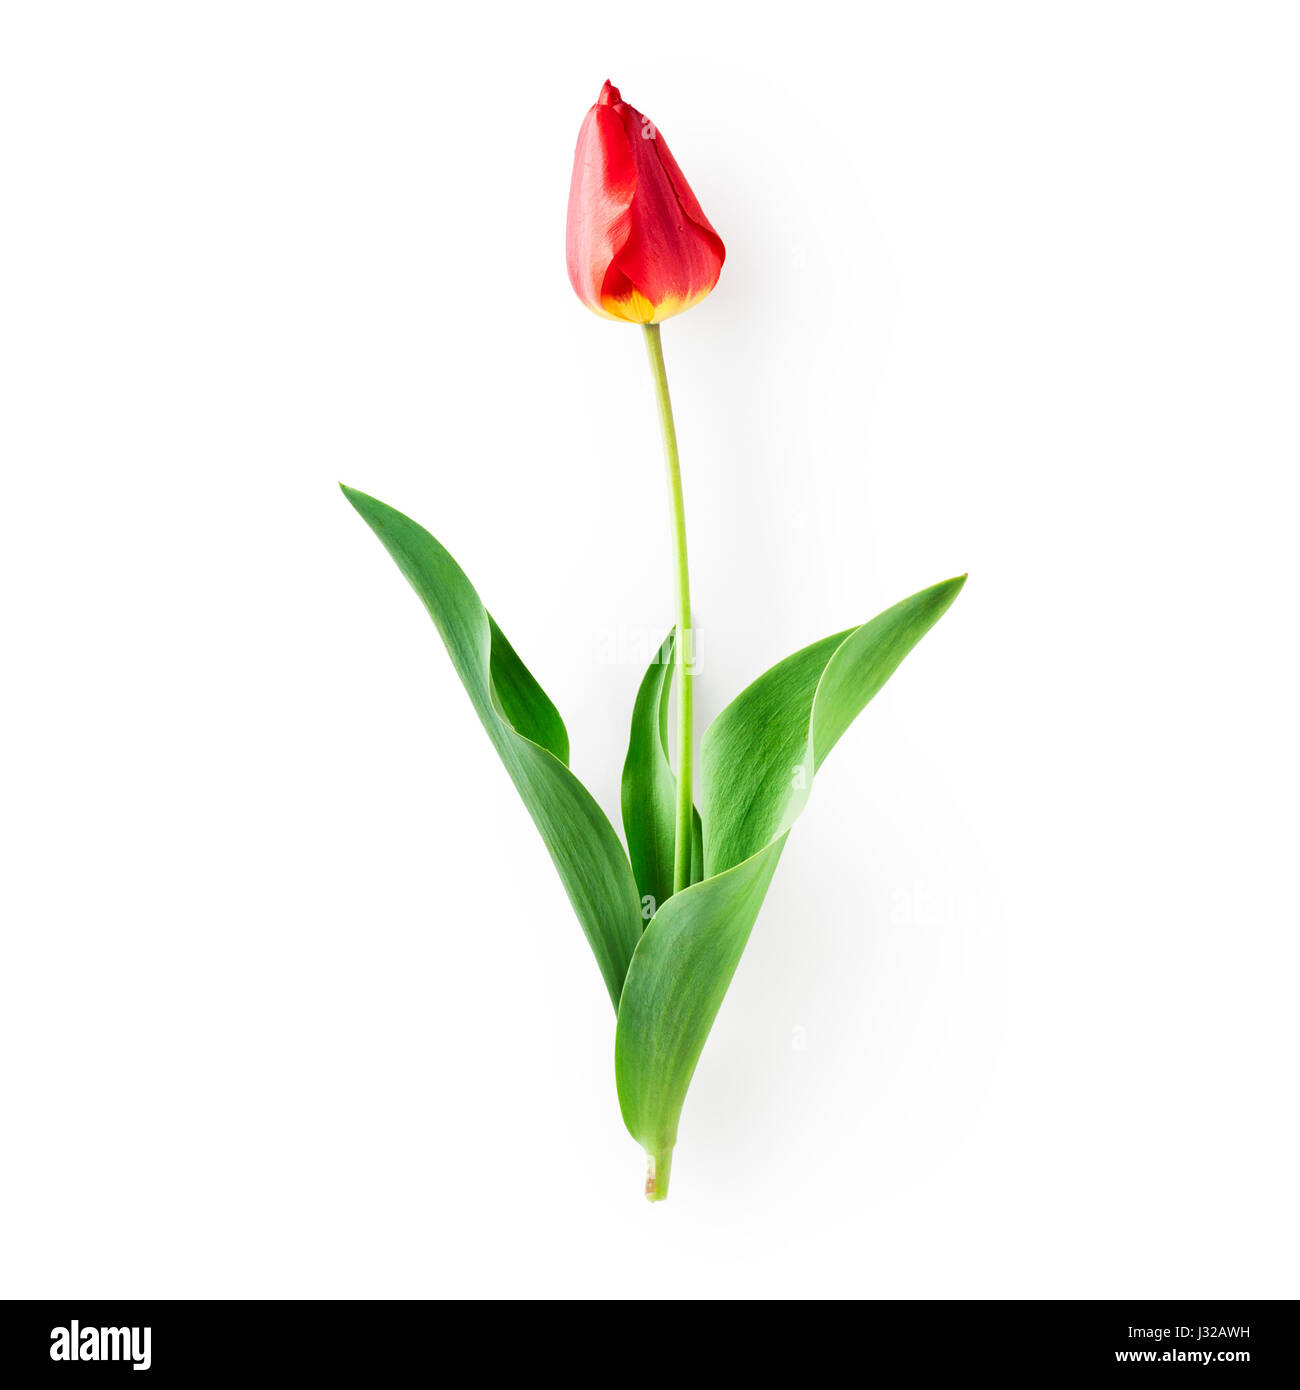 Red tulip fiore con foglie. Oggetto singolo isolato su sfondo bianco percorso di clipping incluso. La molla fiori da giardino Foto Stock